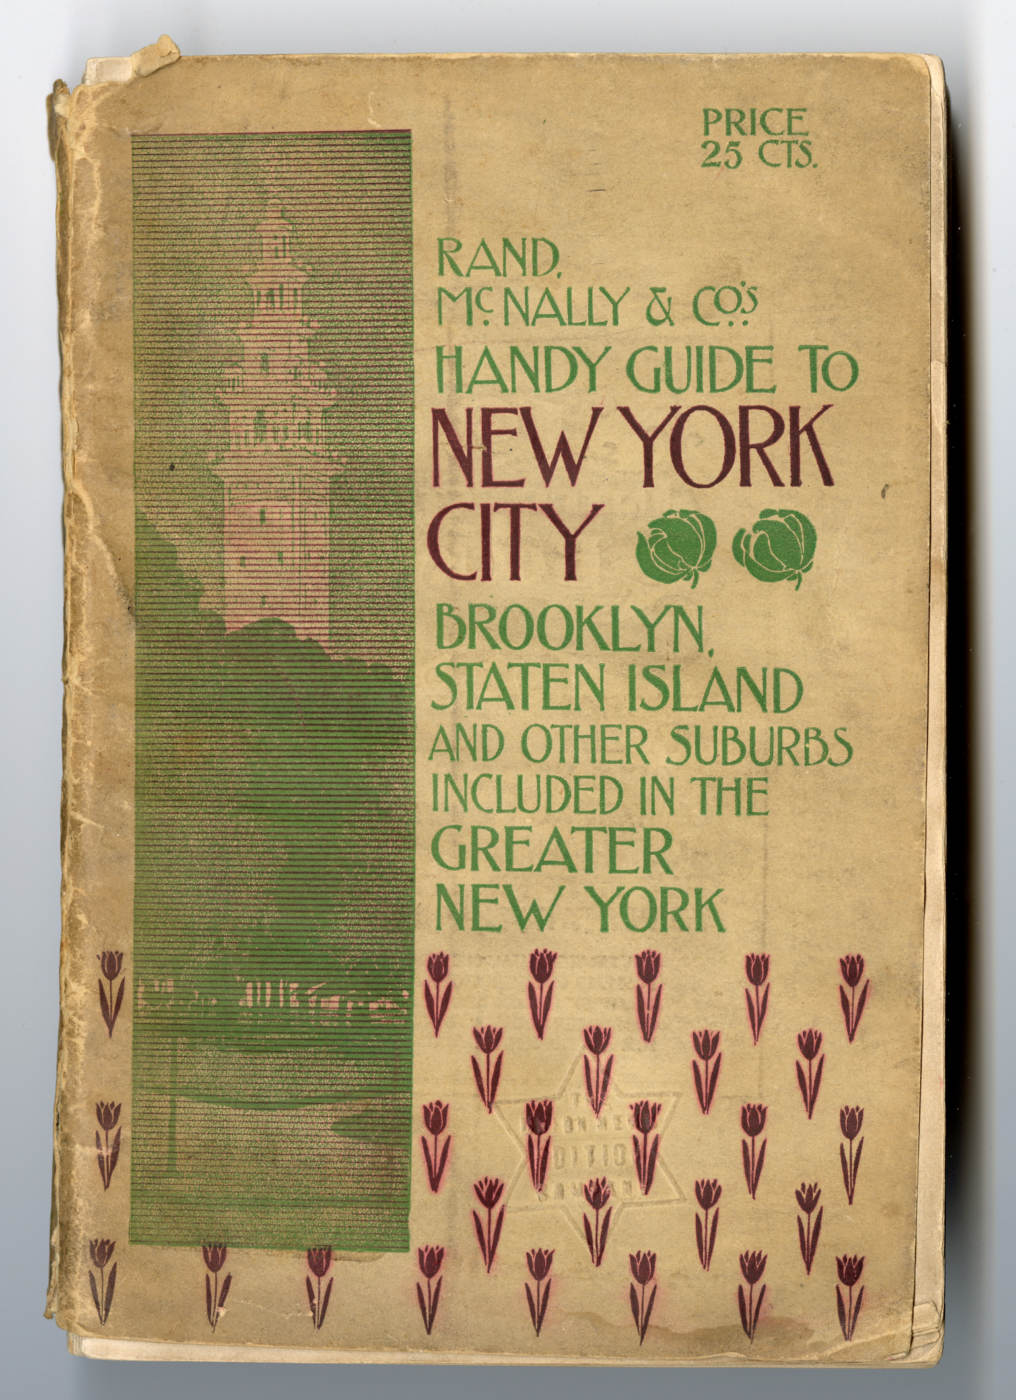 
兰德·麦克纳利公司 (Rand McNally & Company) 的纽约市便捷指南封面：布鲁克林、史泰登岛和大纽约地区的其他郊区（可能包括皇后区）。由 Roy Delbyck 捐赠，美国华人博物馆 (MOCA) 馆藏。